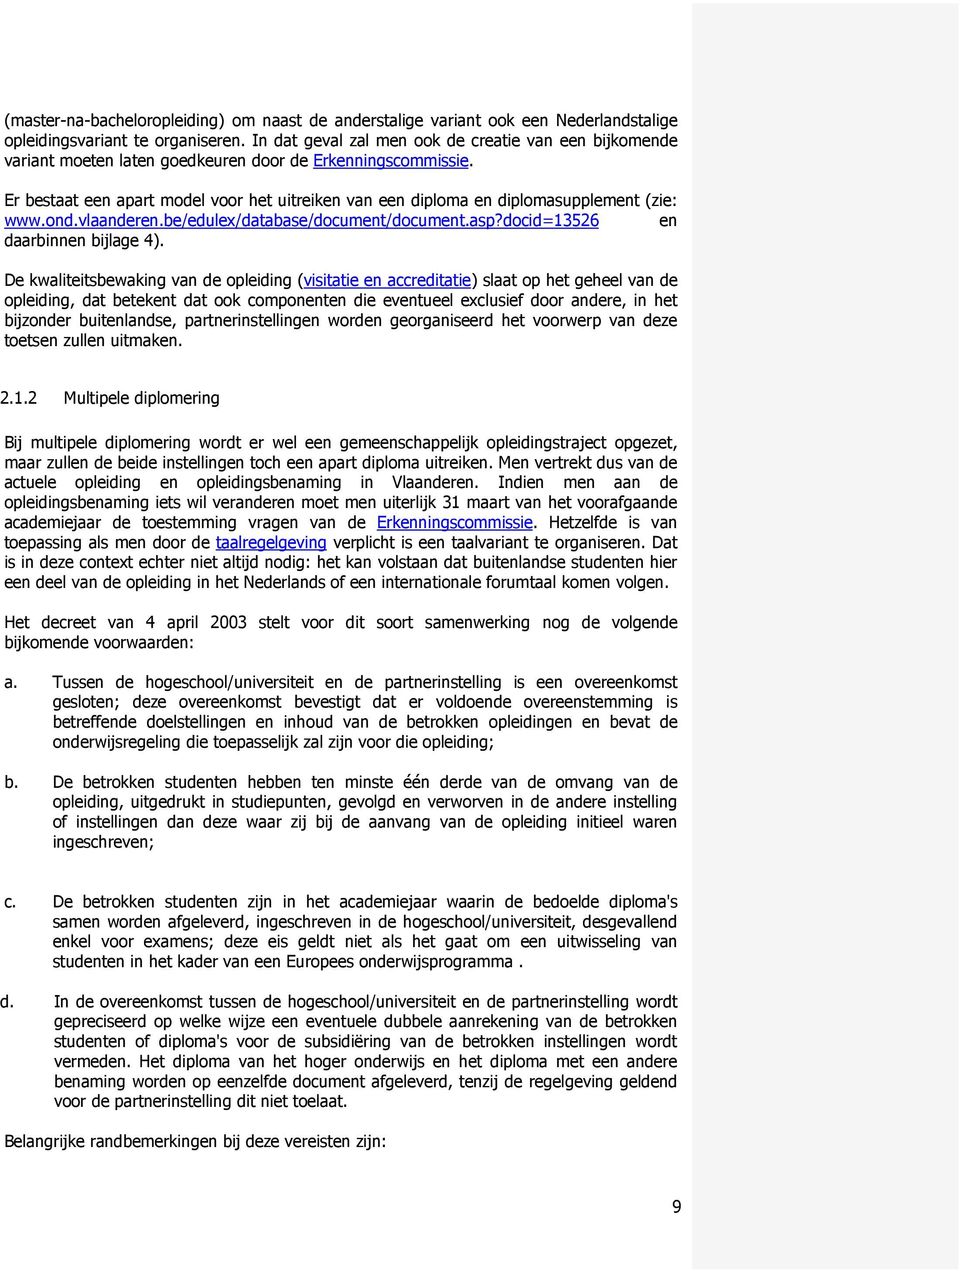 Er bestaat een apart model voor het uitreiken van een diploma en diplomasupplement (zie: www.ond.vlaanderen.be/edulex/database/document/document.asp?docid=13526 en daarbinnen bijlage 4).